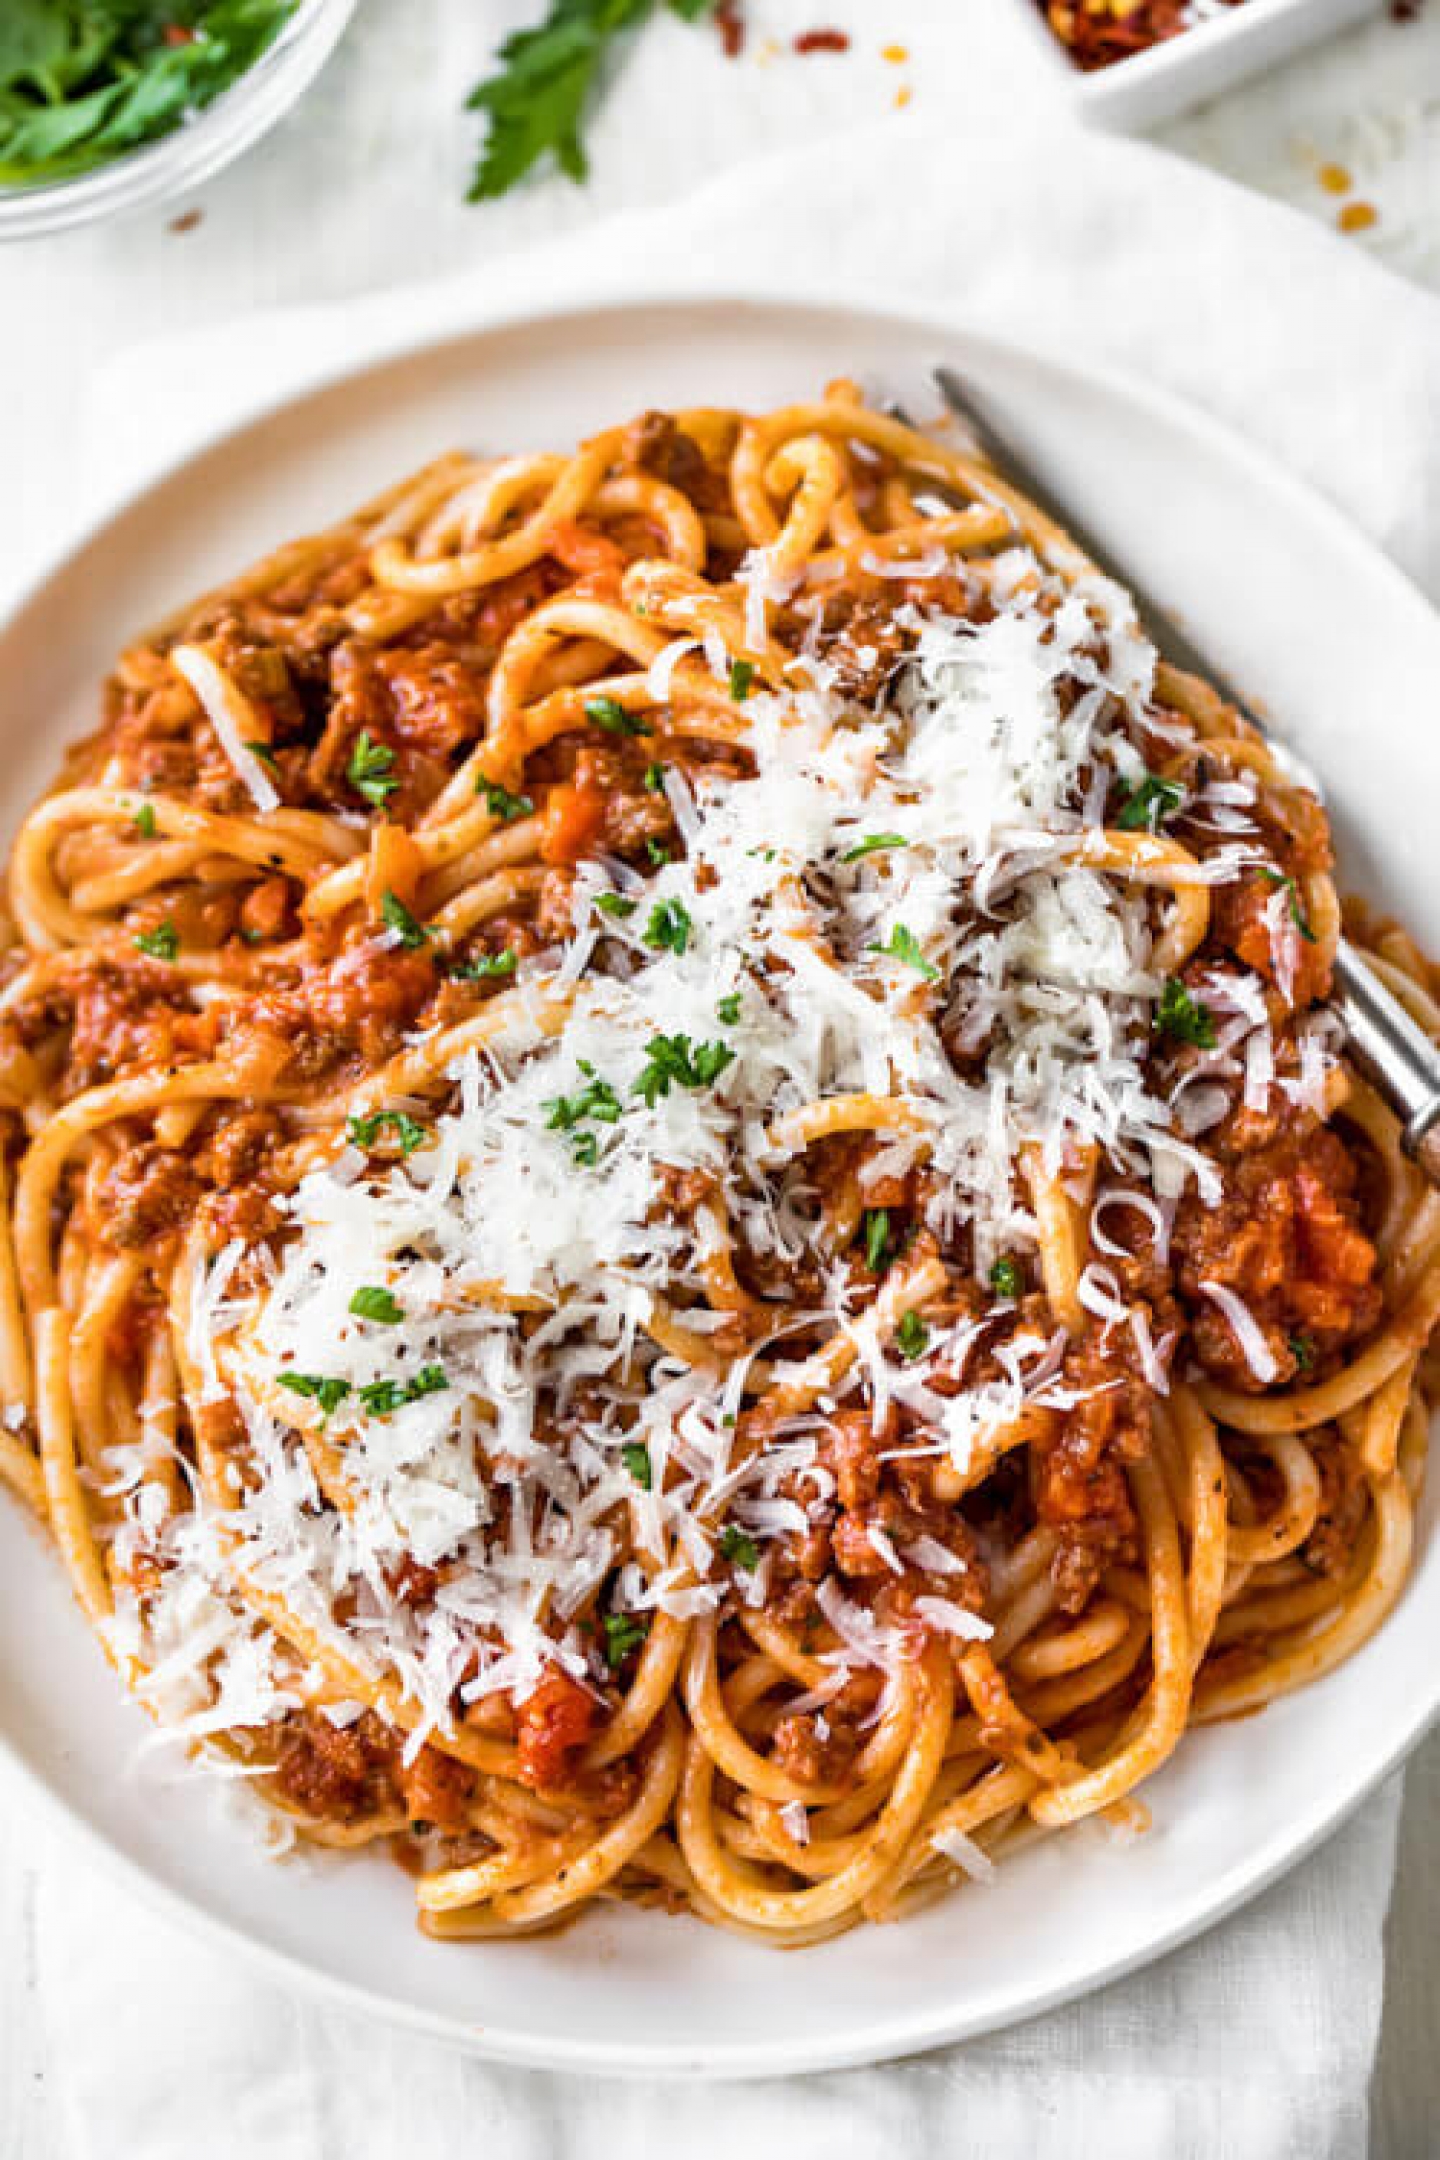 Итальянское блюдо из лапши. Итальянская лапша. Итальянская паста. Итальянские спагетти. Казаречче болоньезе.